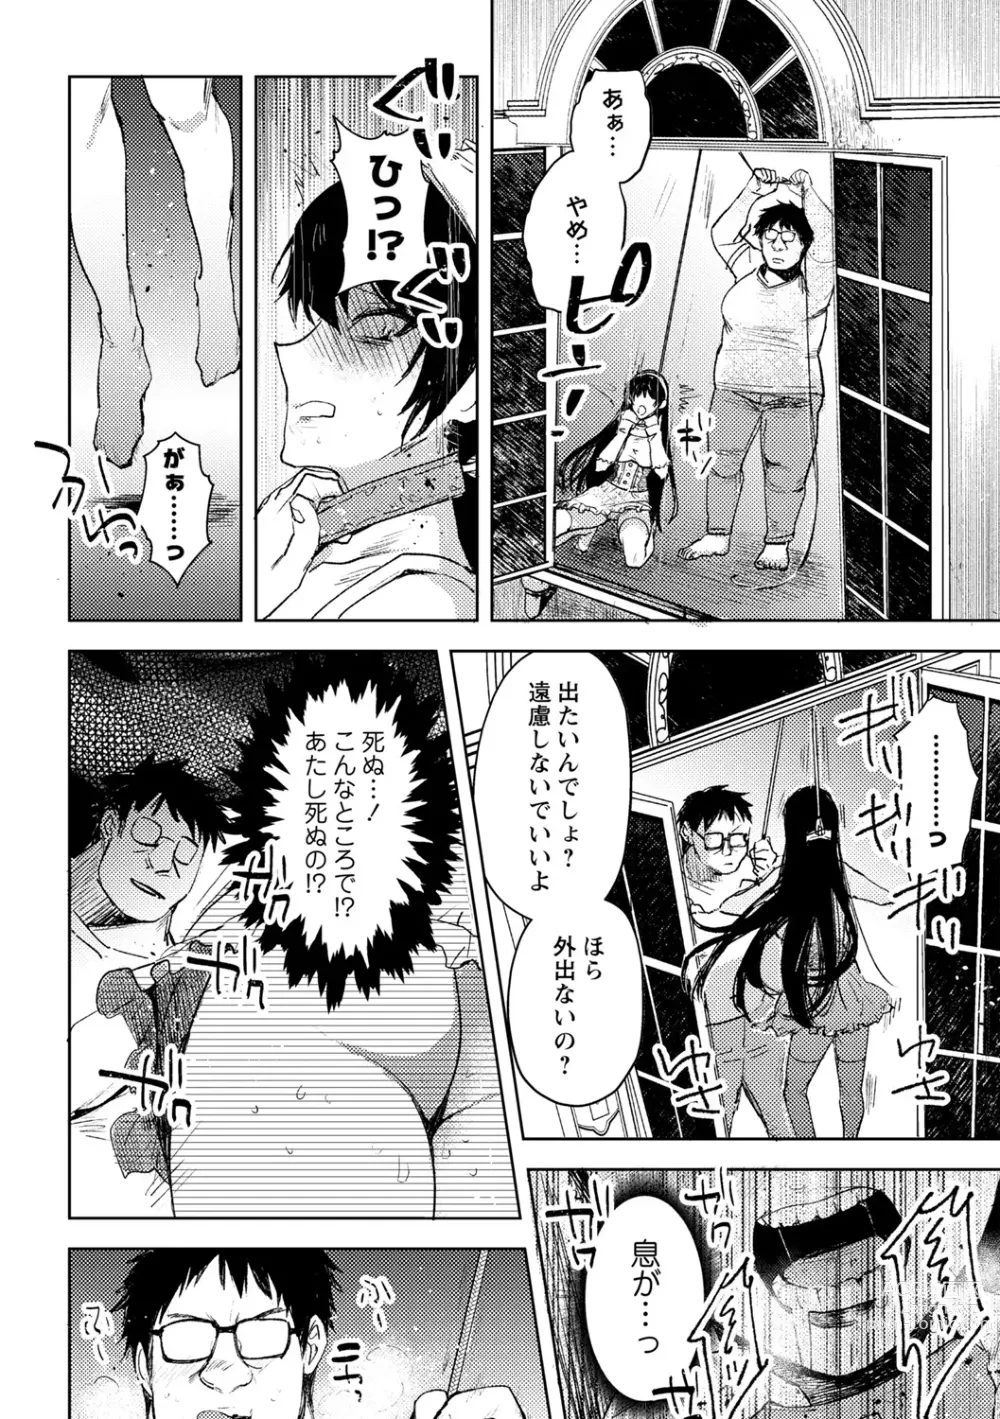 Page 22 of manga Yuuhei  KodoOji no Tou